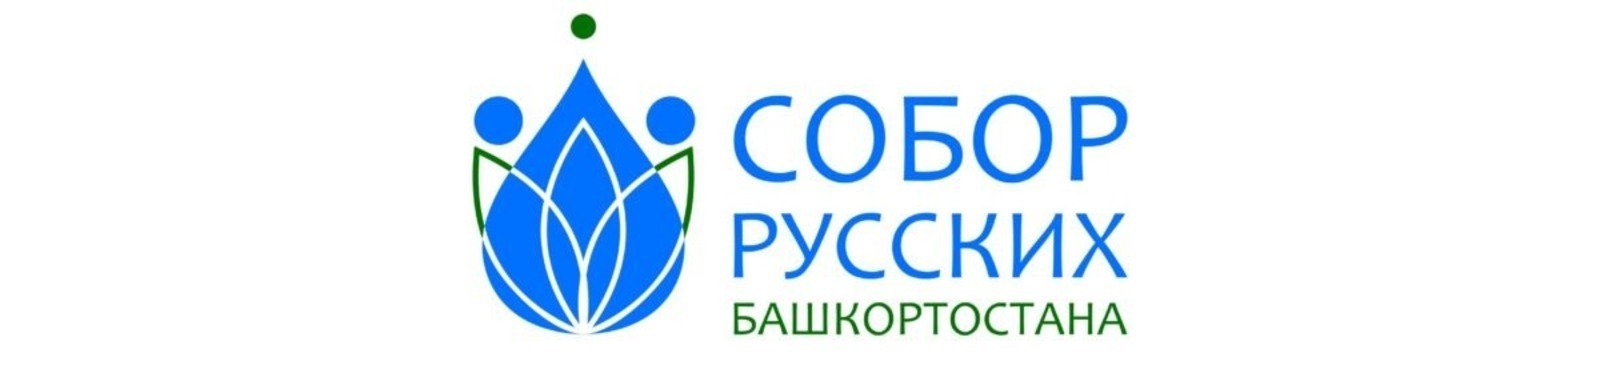 «Собор русских Башкортостана» подготовил проект «Цитатник», который стартует 25 апреля